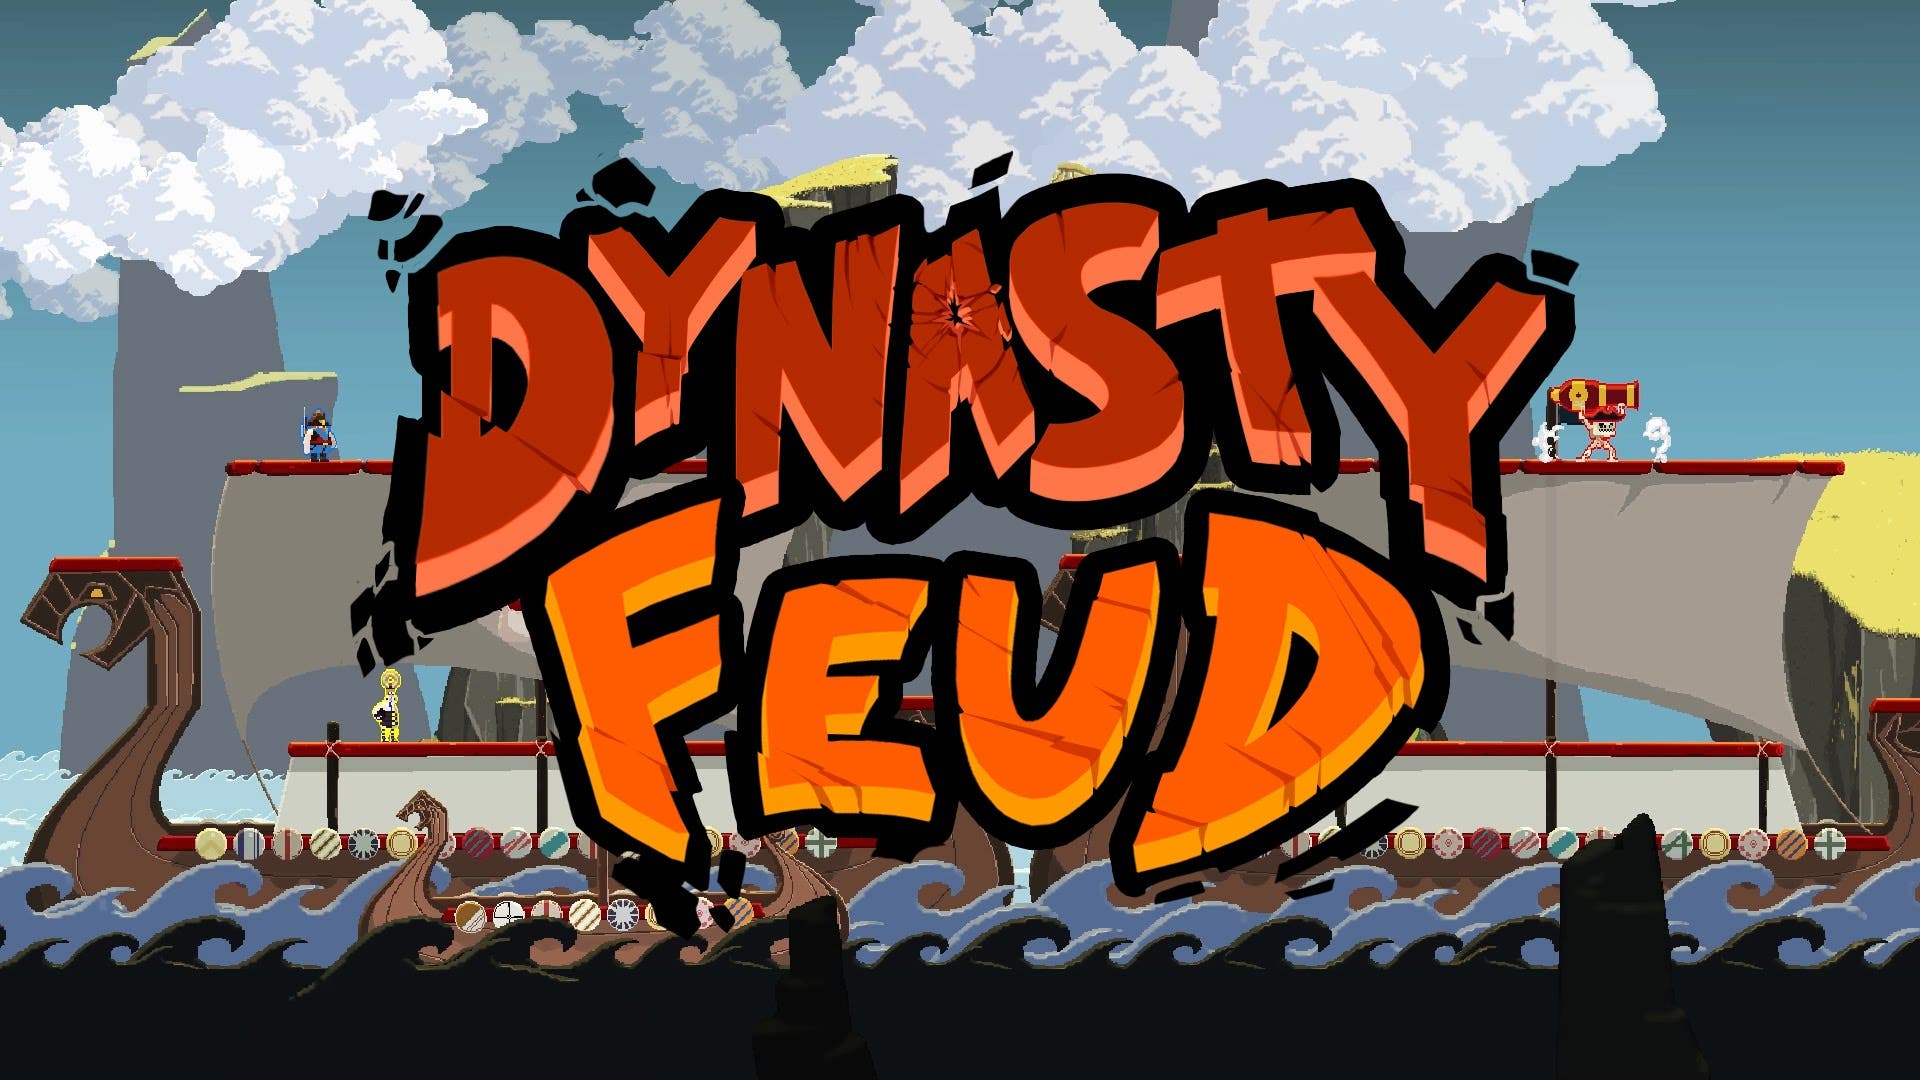 DynastyFeud6